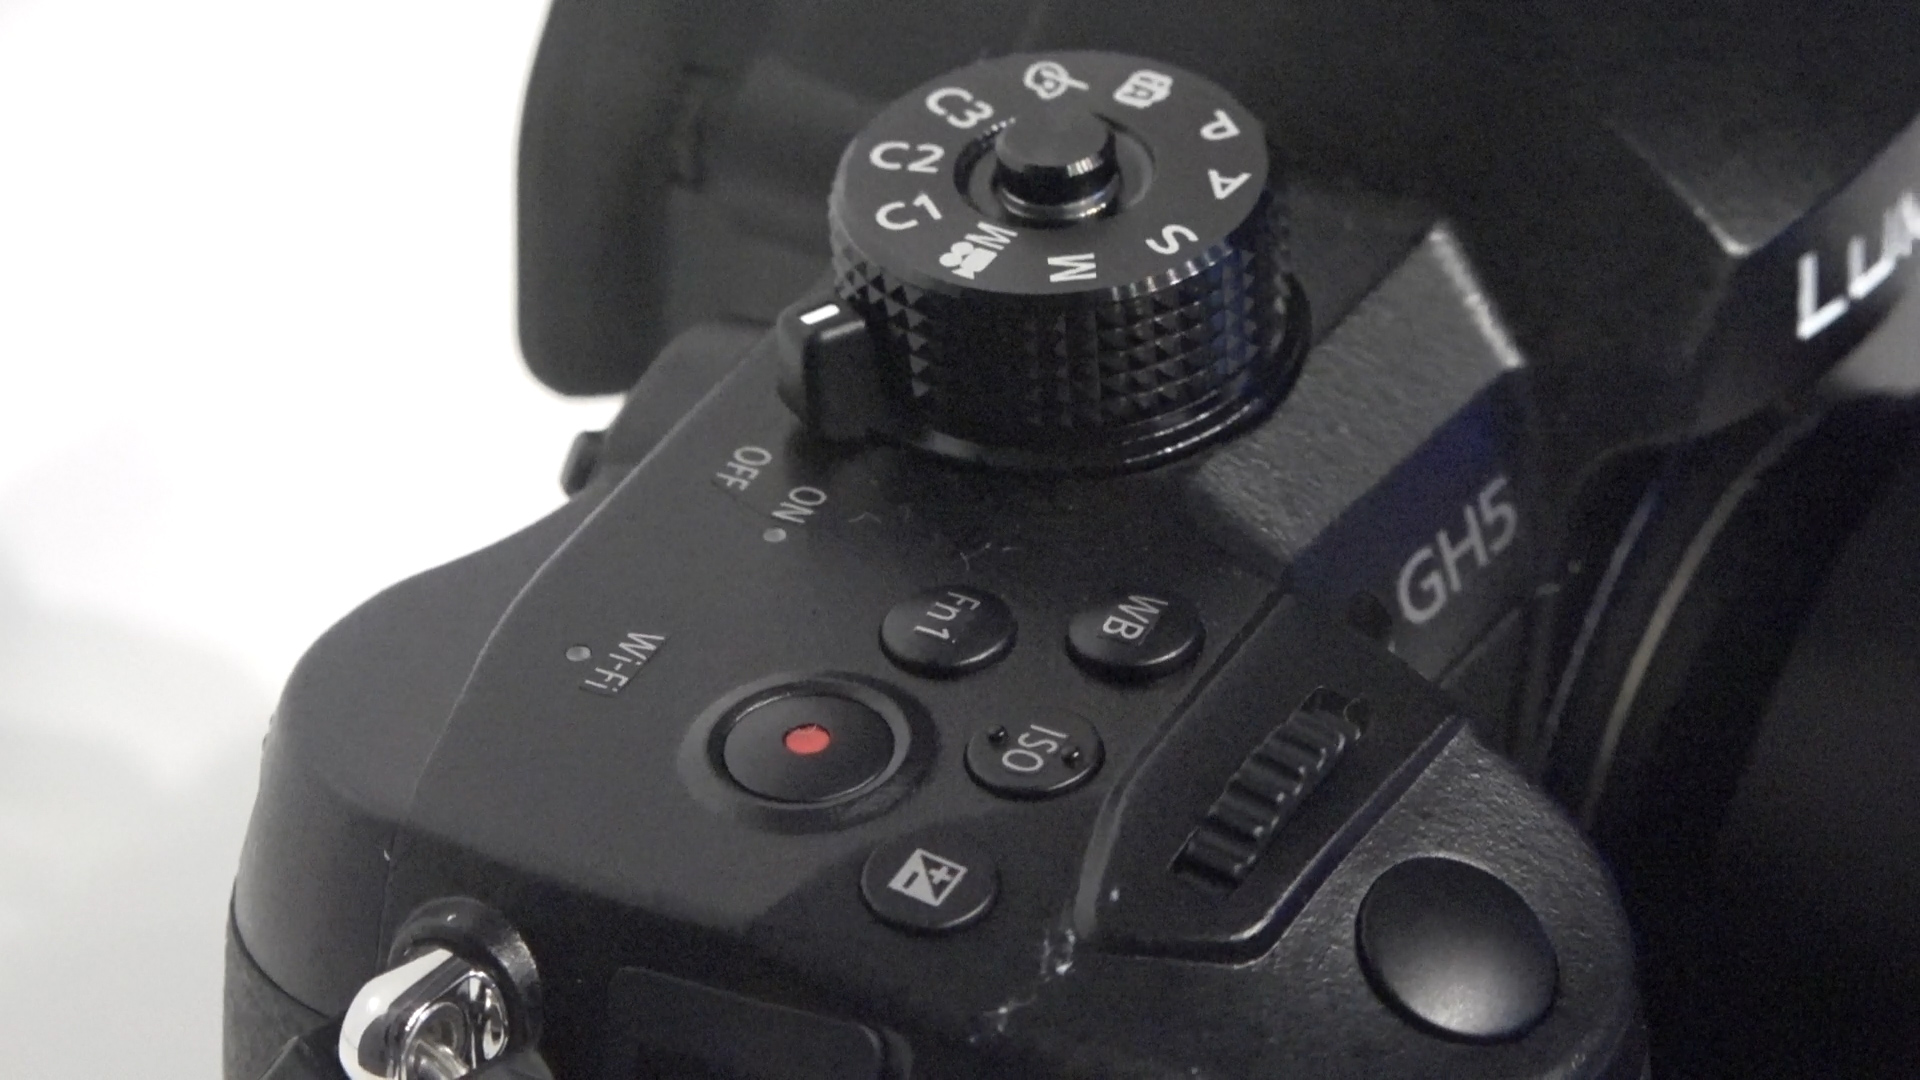 Panasonic GH5 kamera ön inceleme '4K 60p video kaydı'